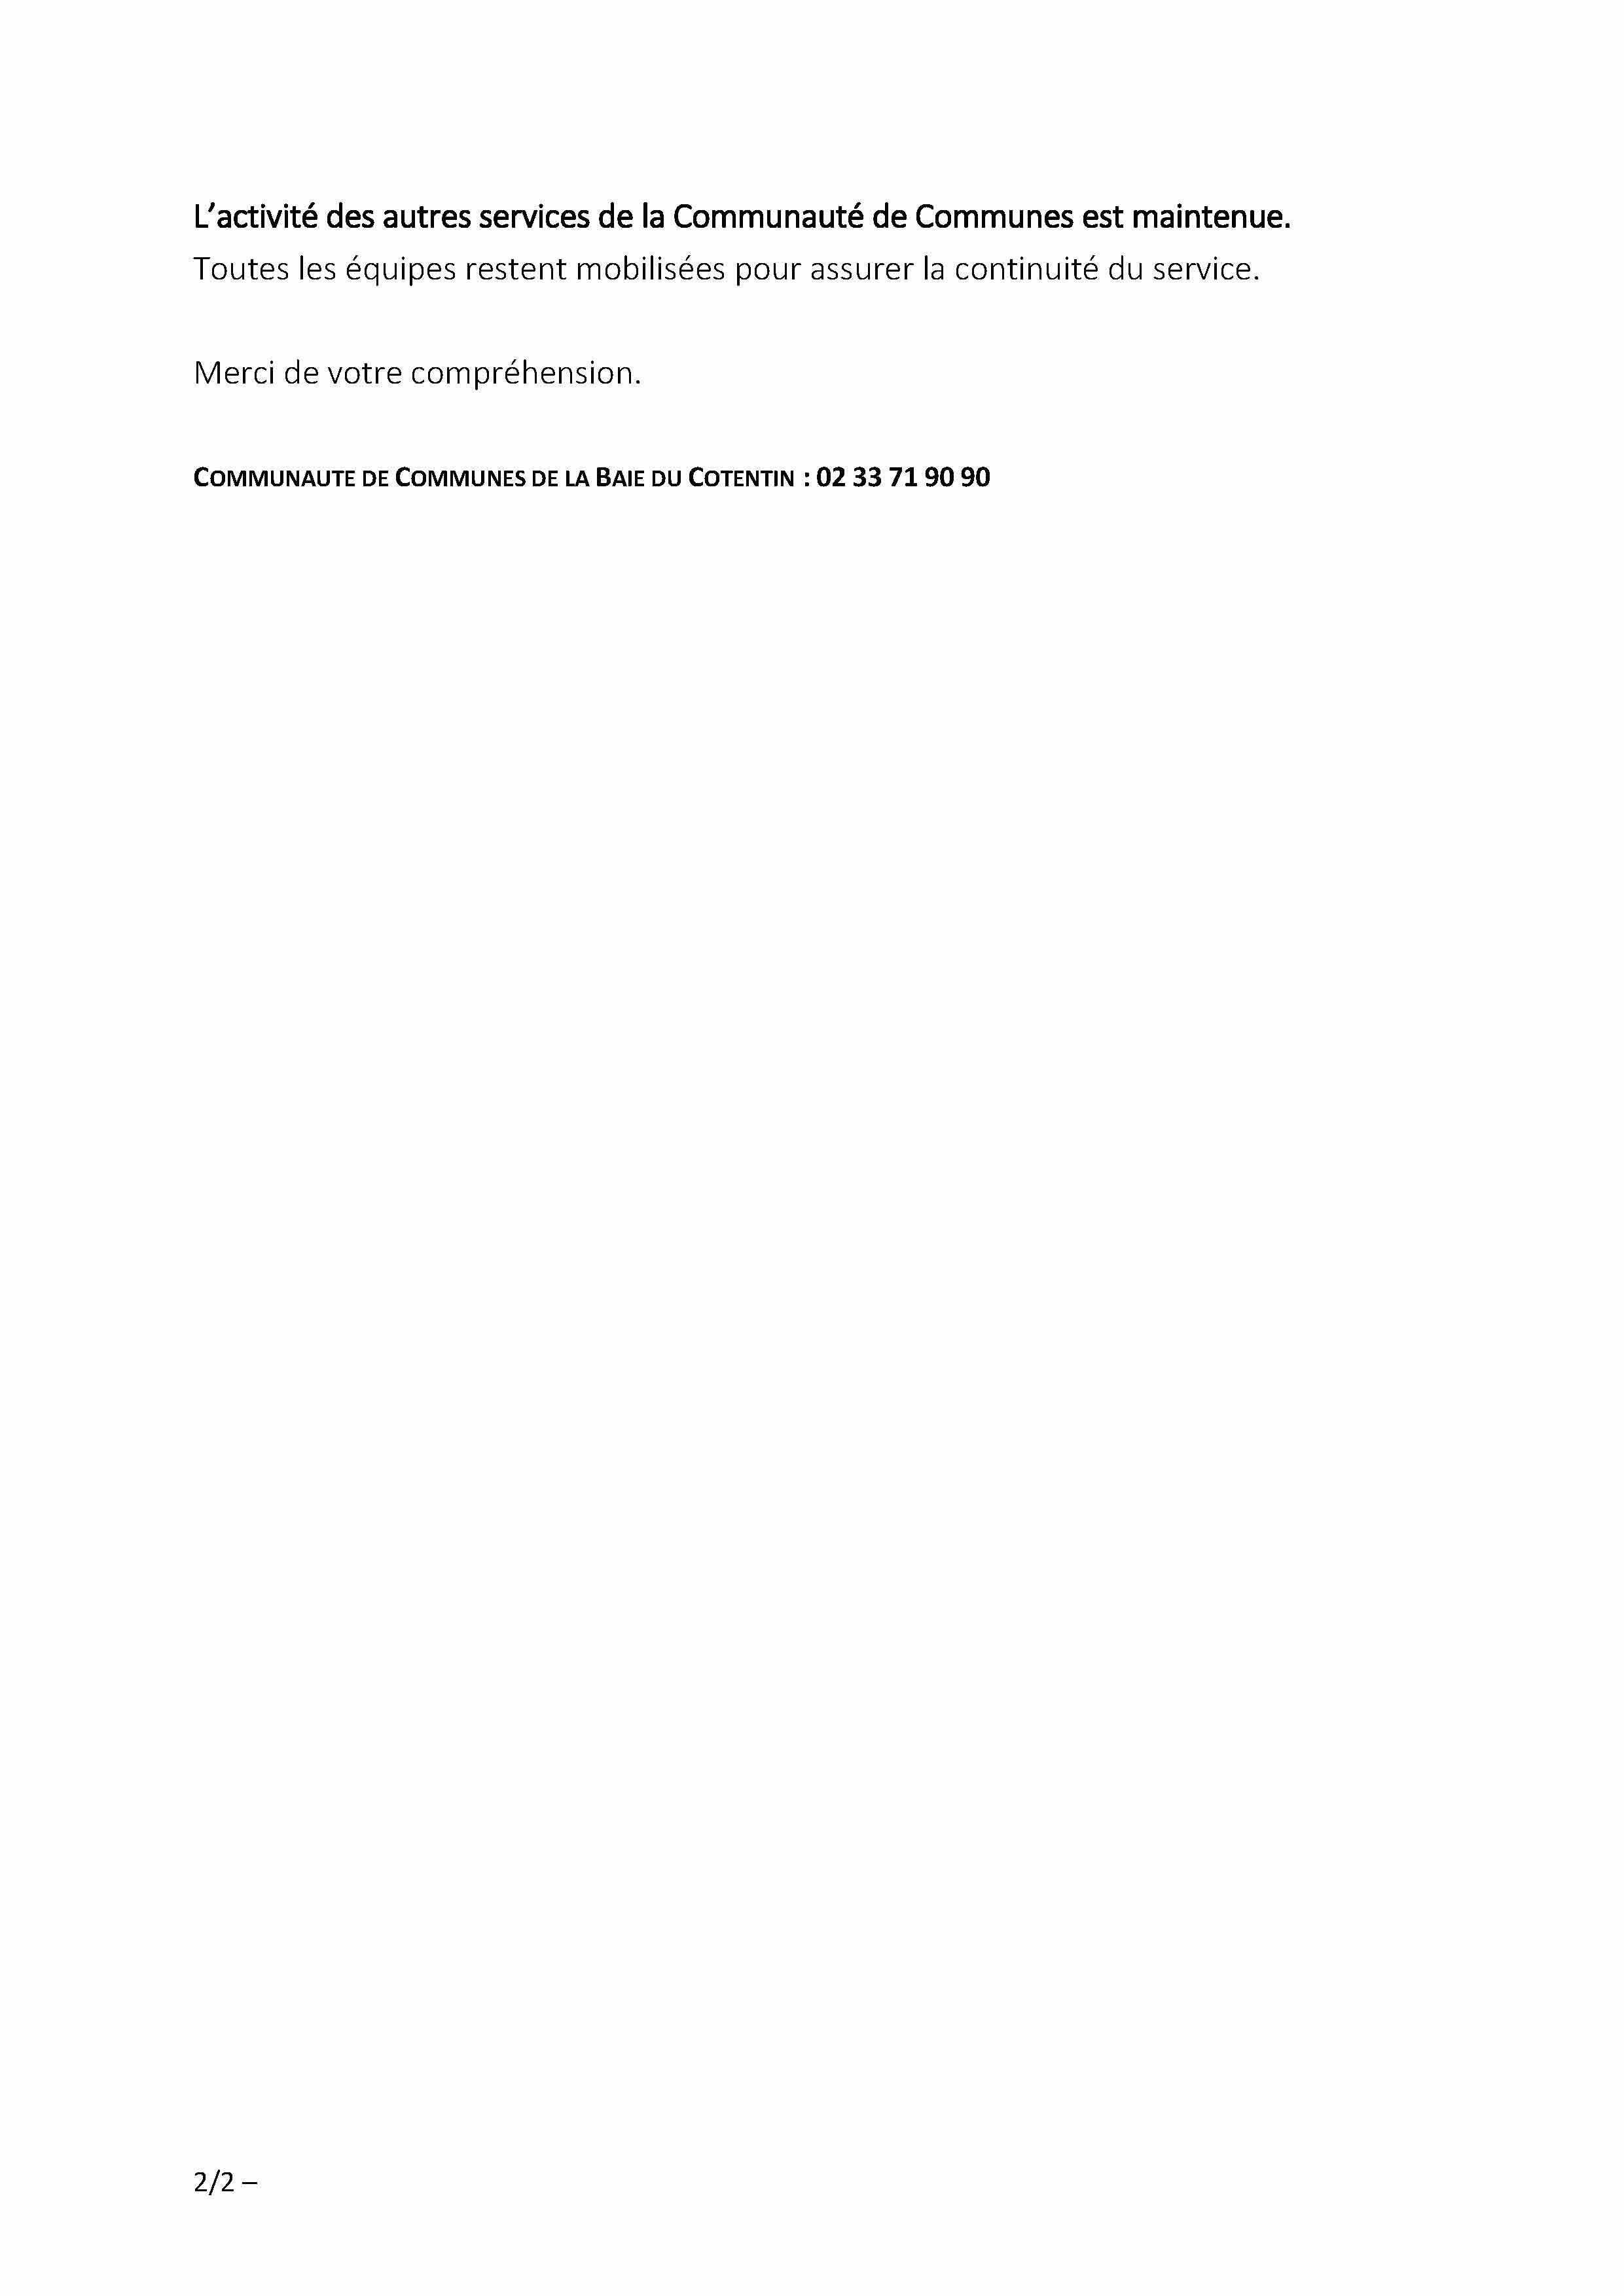 CORONAVIRUS - Communiqué de presse - Point de situation des services CCBDC - 28 01 2022_Page_2